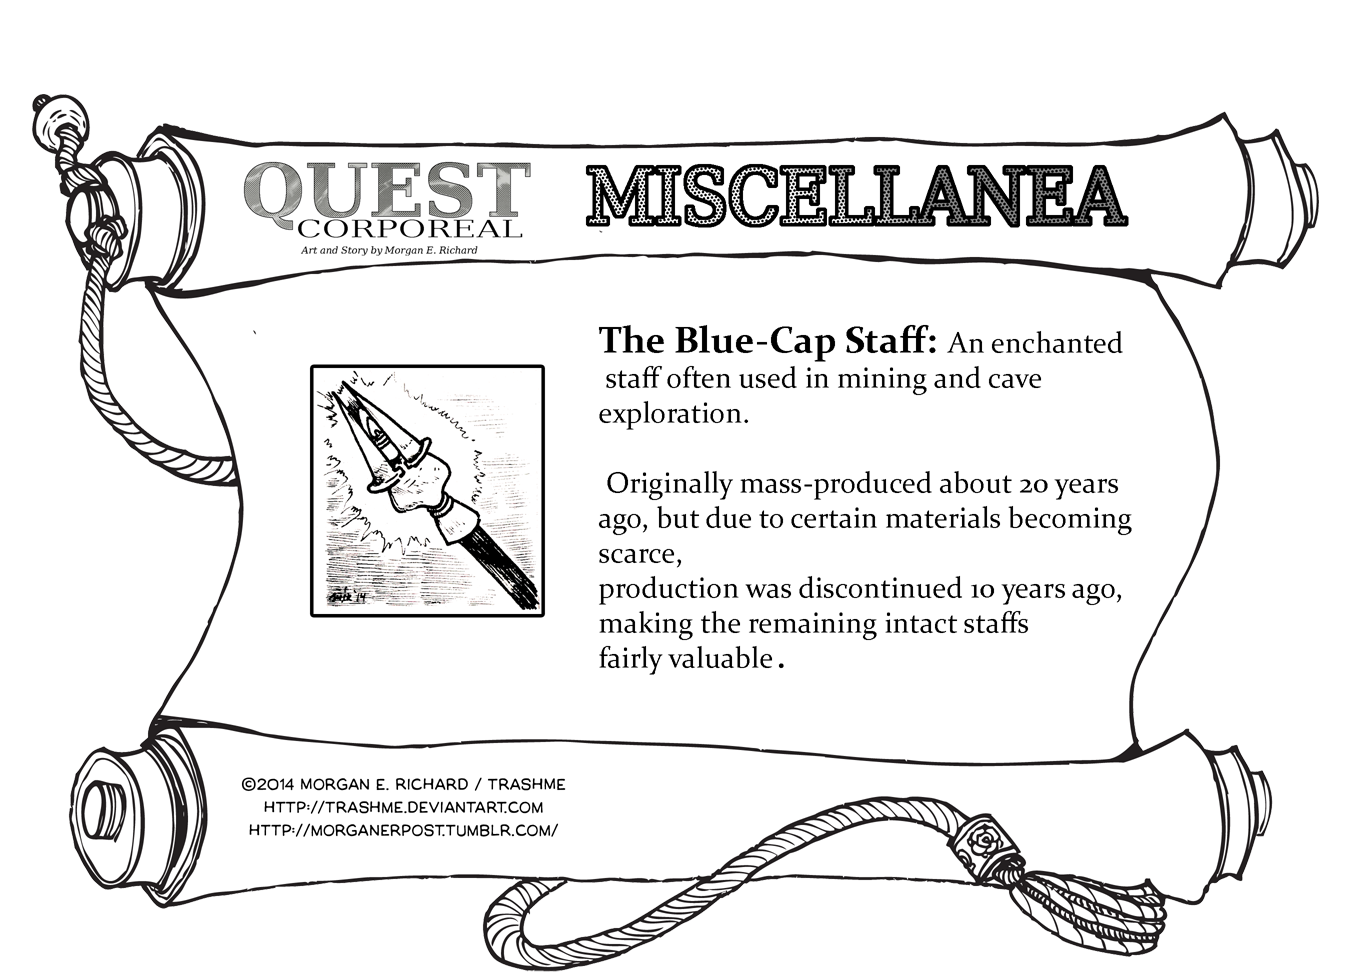 Miscellanea Corporeal: The Blue-Cap Staff